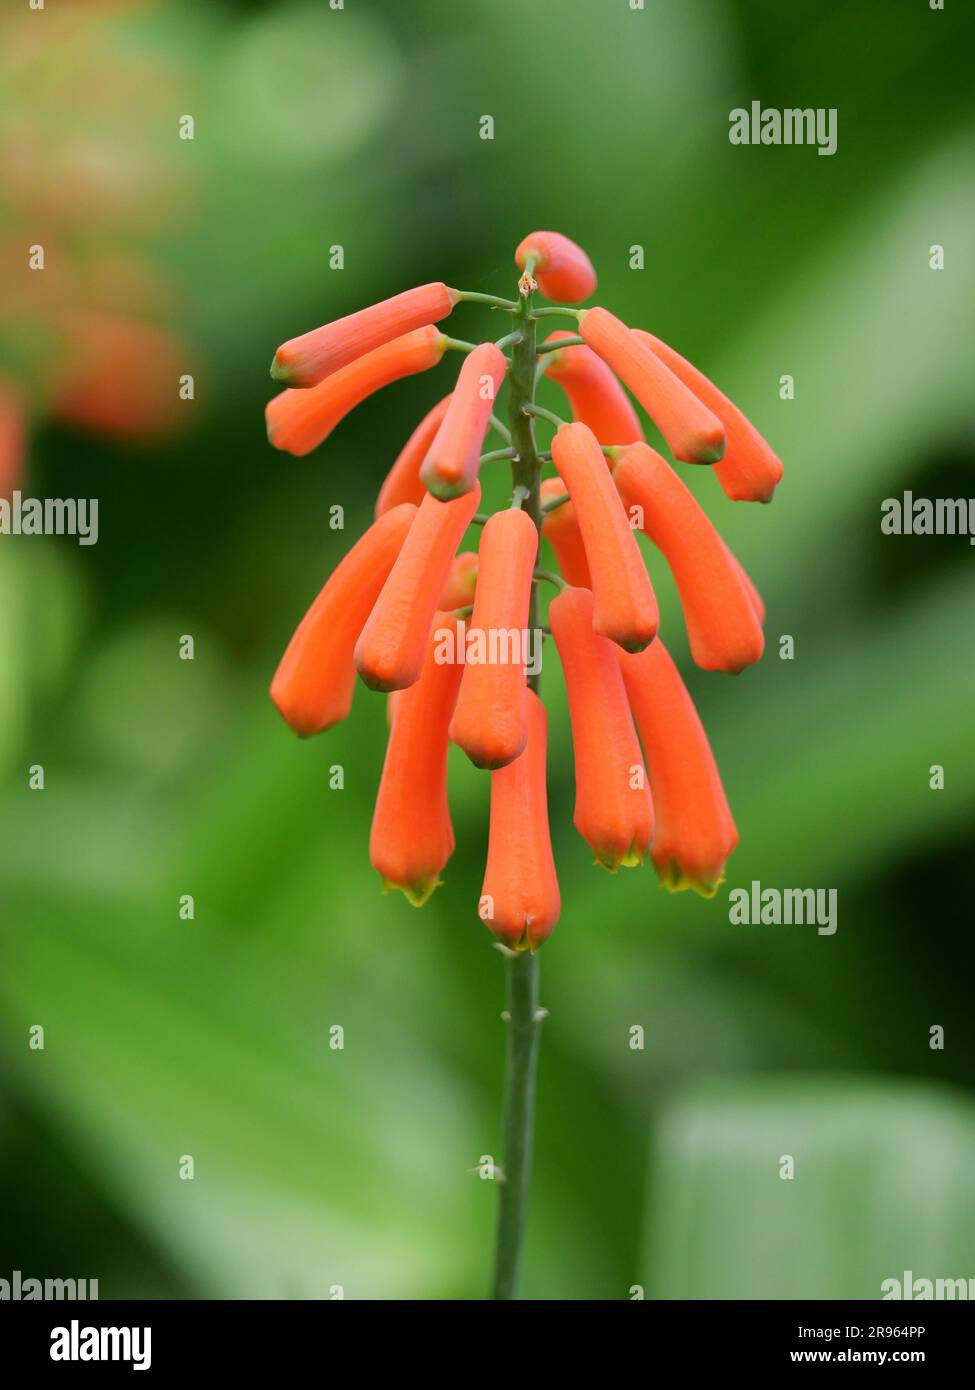 elongated orange buds of a lachenalia plant Stock Photo